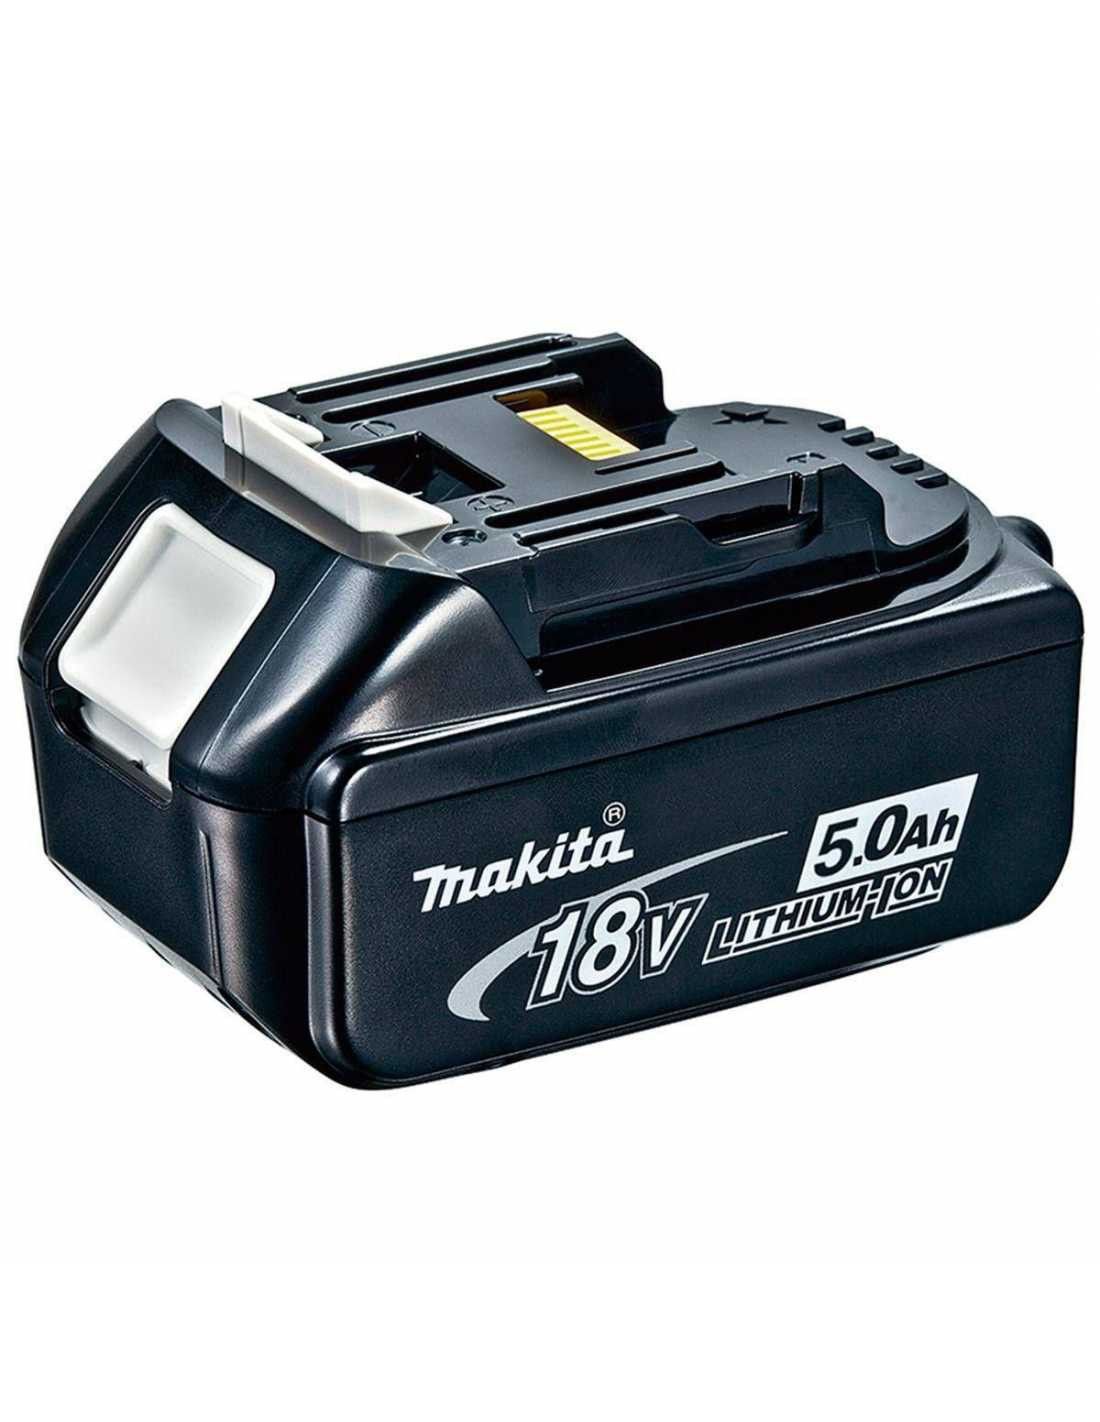 Makita-Set mit 10 Werkzeugen + 3 Schlägern + Ladegerät + 2 Taschen DLX1071BL3